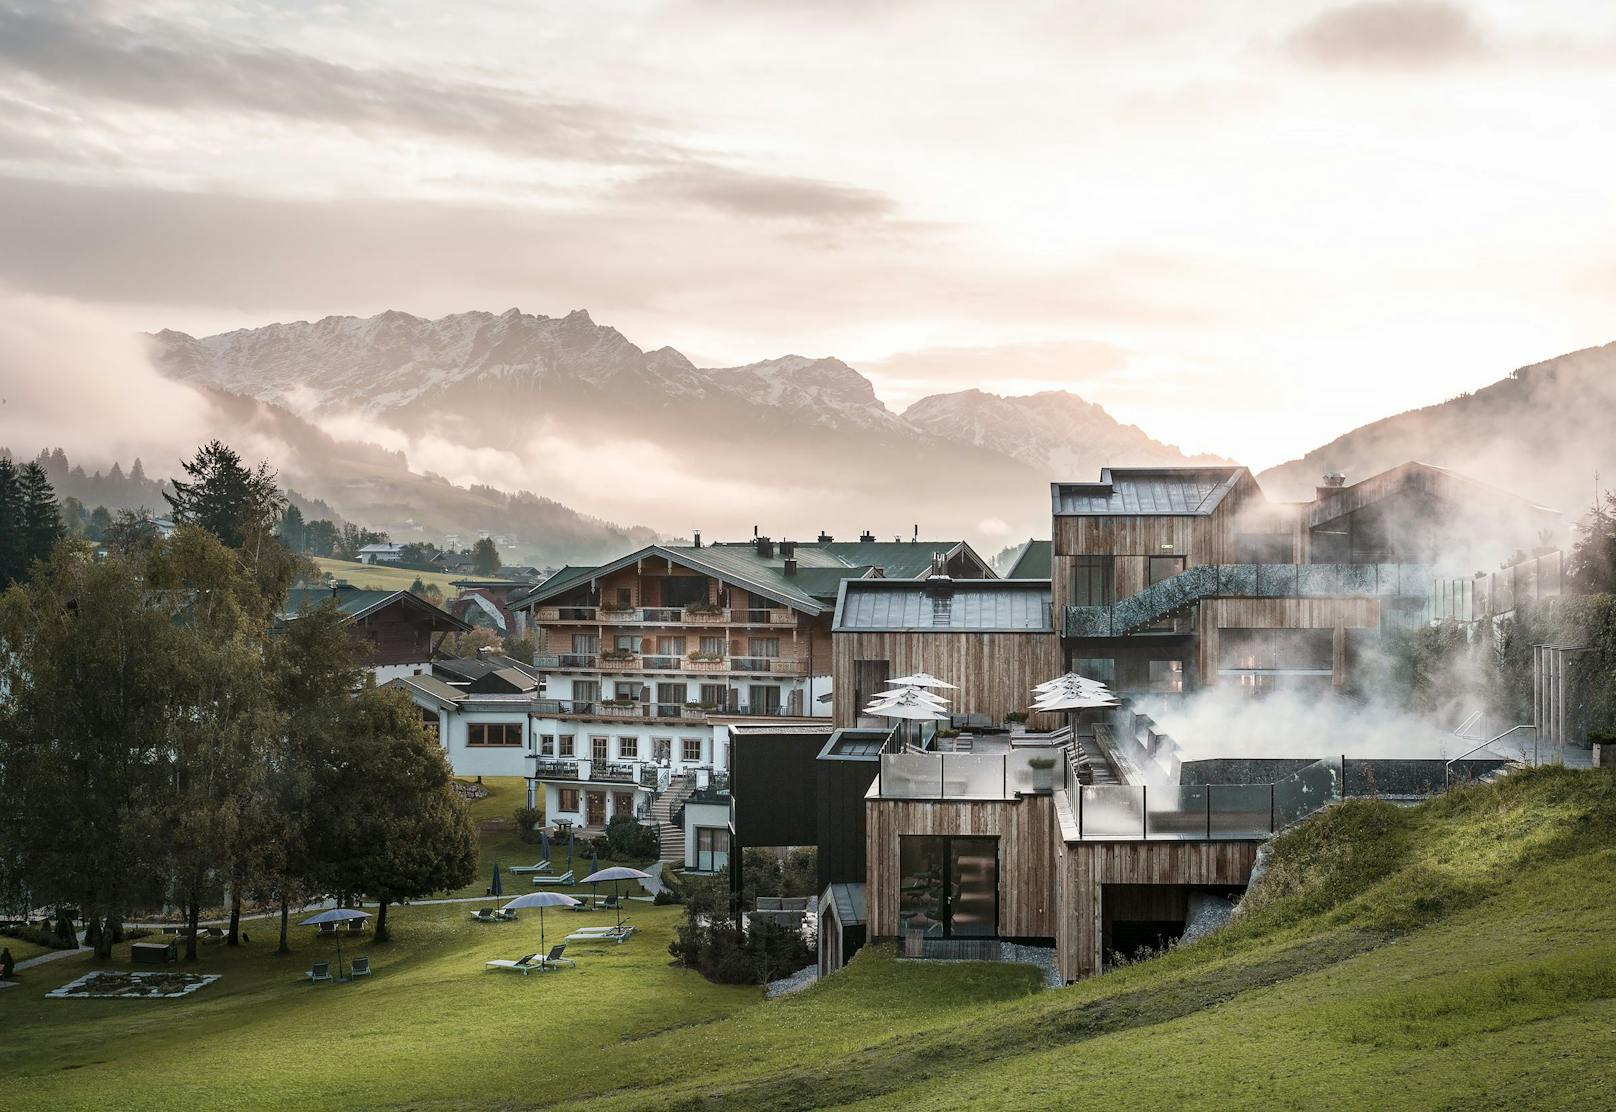 Hervorragende Familienhotels, wie etwa das Naturhotel Forsthofgut in Leongang, gibt es in Österreich zuhauf. Ein großartiges Angebot für Groß und Klein inklusive!